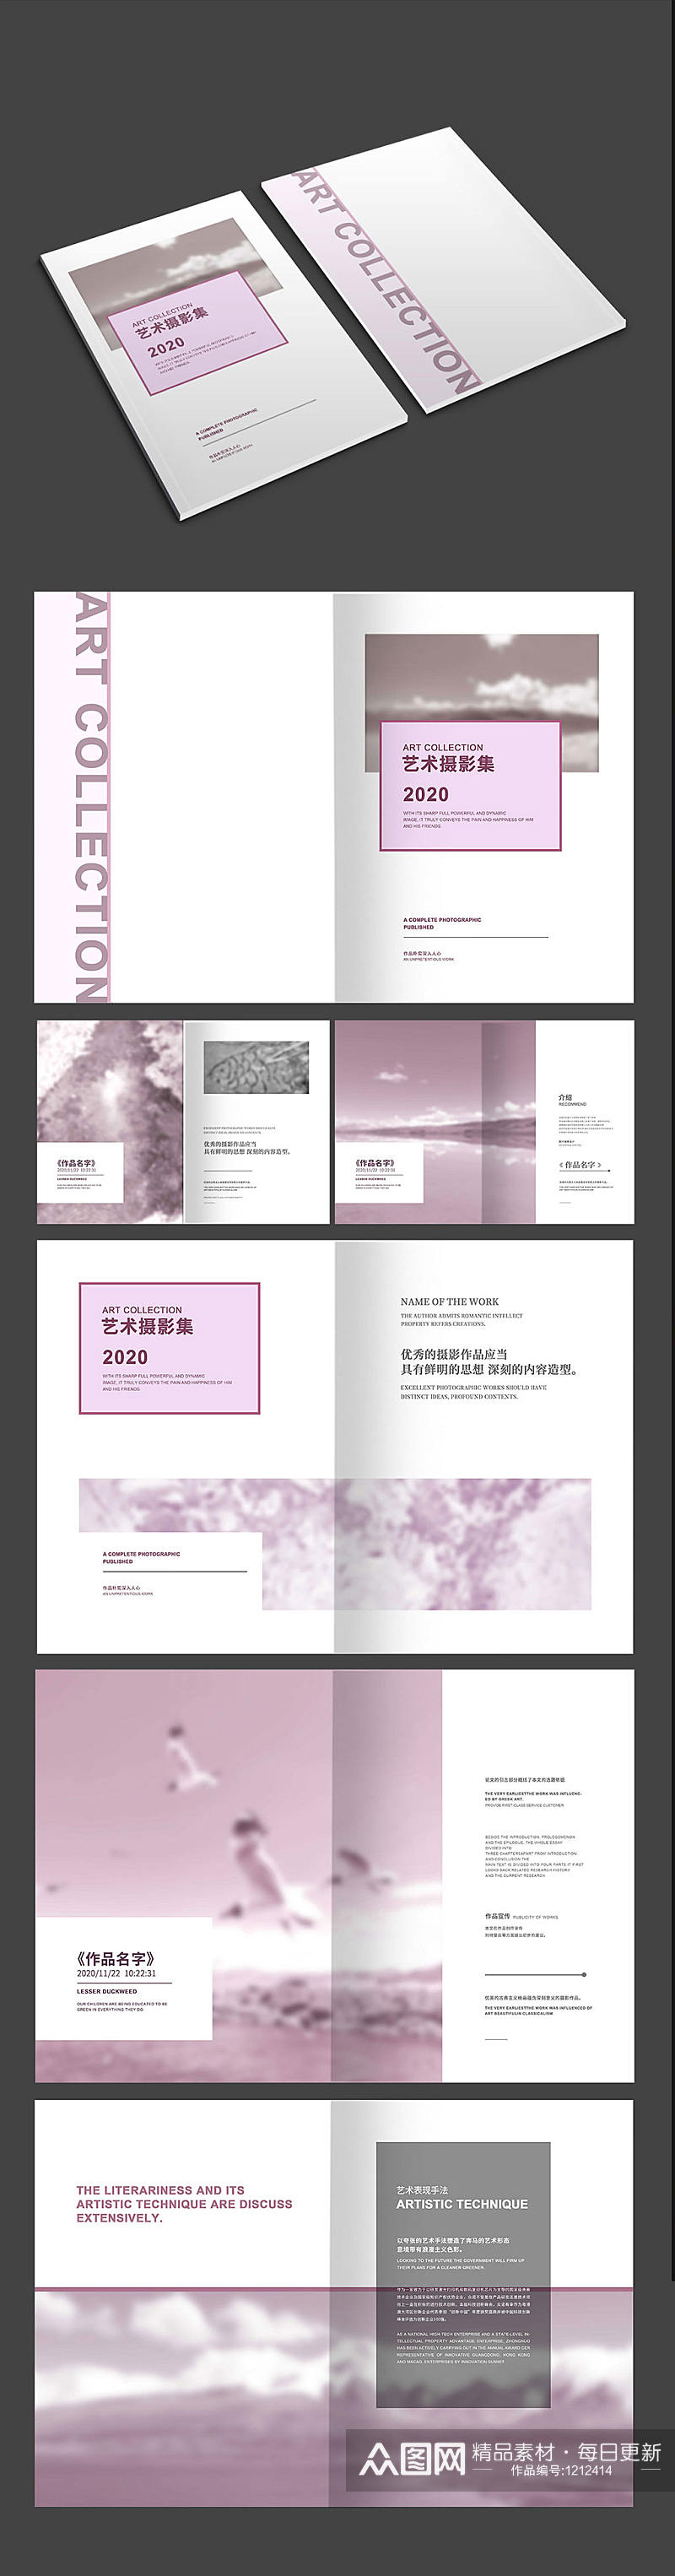 紫色艺术摄影画册素材